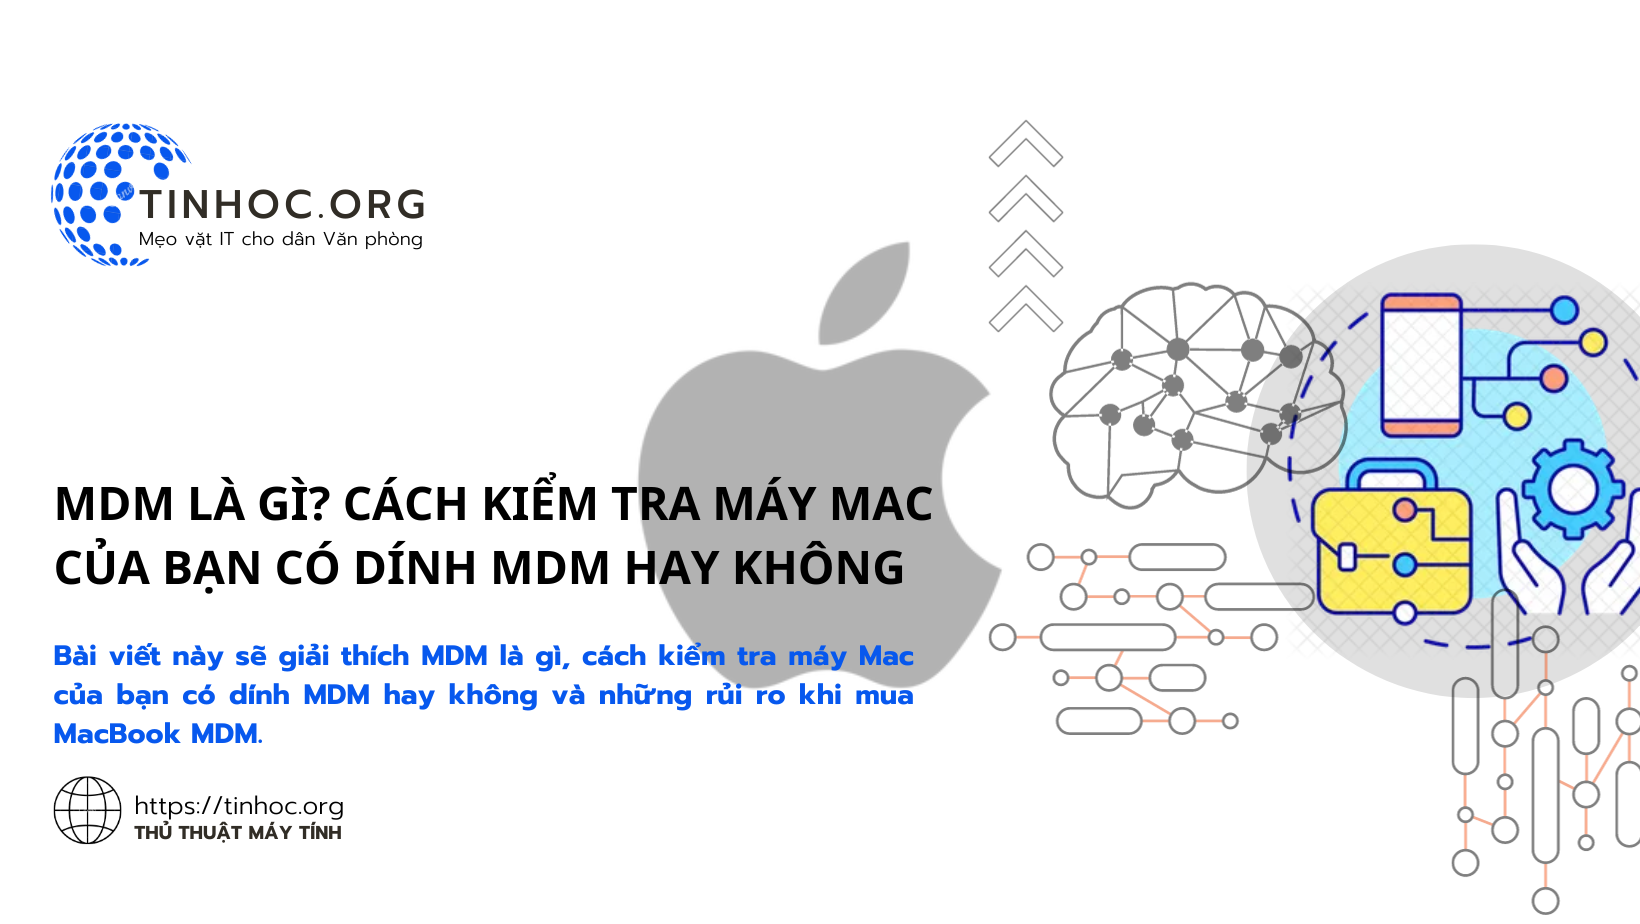 Bài viết này sẽ giải thích MDM là gì, cách kiểm tra máy Mac của bạn có dính MDM hay không và những rủi ro khi mua MacBook MDM.